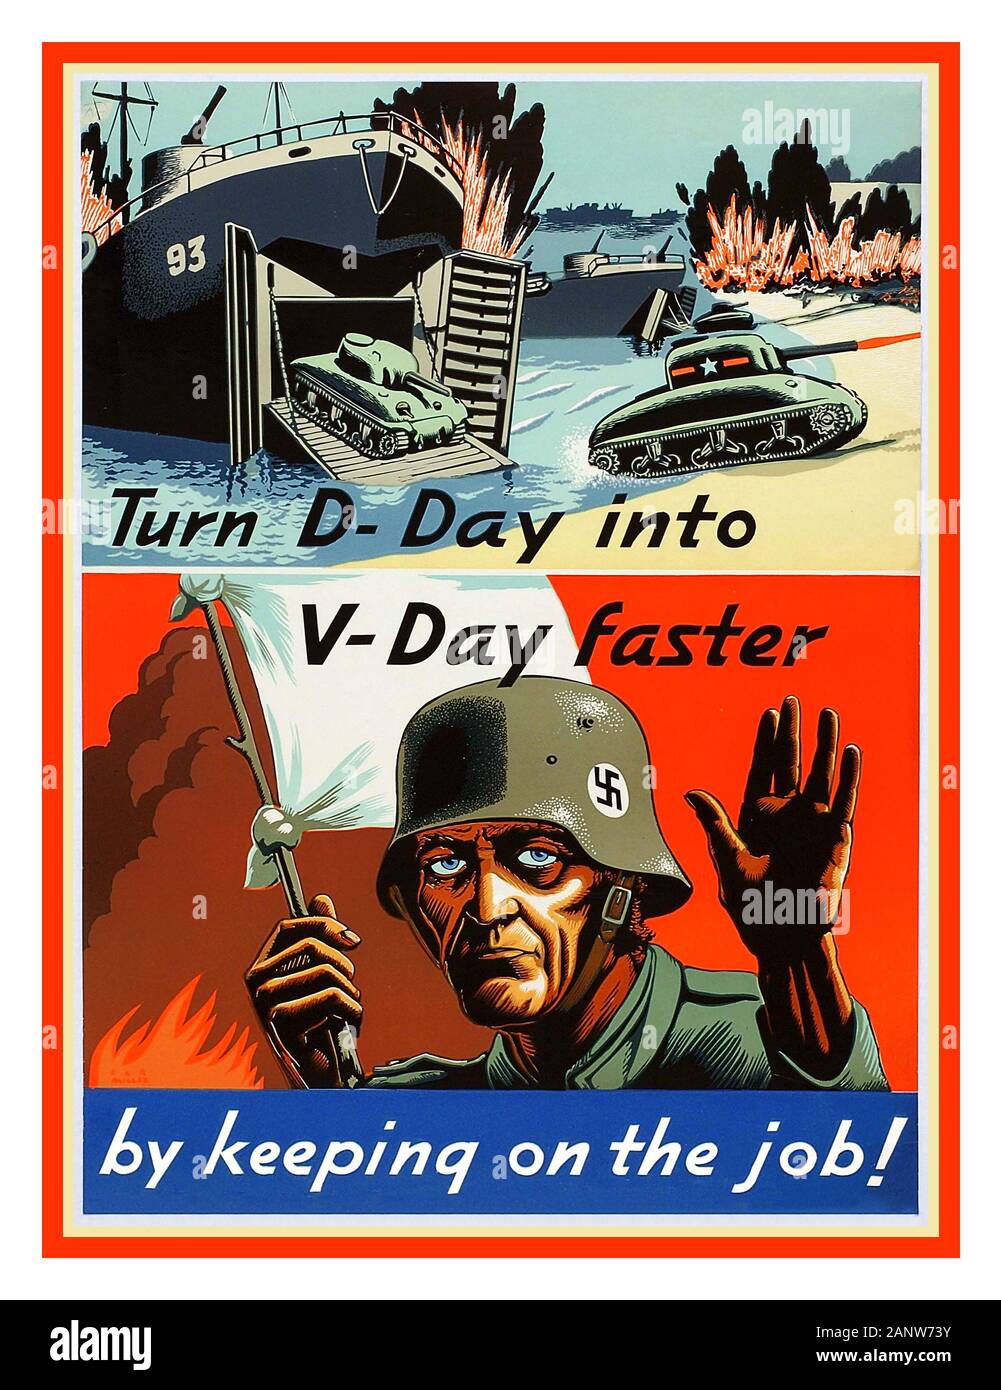 Vintage 1940's WW2 American Propaganda guerra industriale lavoro output Poster 'trasformare D-Day in V-Day più veloce, mantenendo il lavoro' che illustra l'attracco americano sulle spiagge della Normandia e sotto, un bravo soldato dell'esercito tedesco che indossa stemma Swastika elmetto ondeggiante bandiera bianca con mano in resa Foto Stock